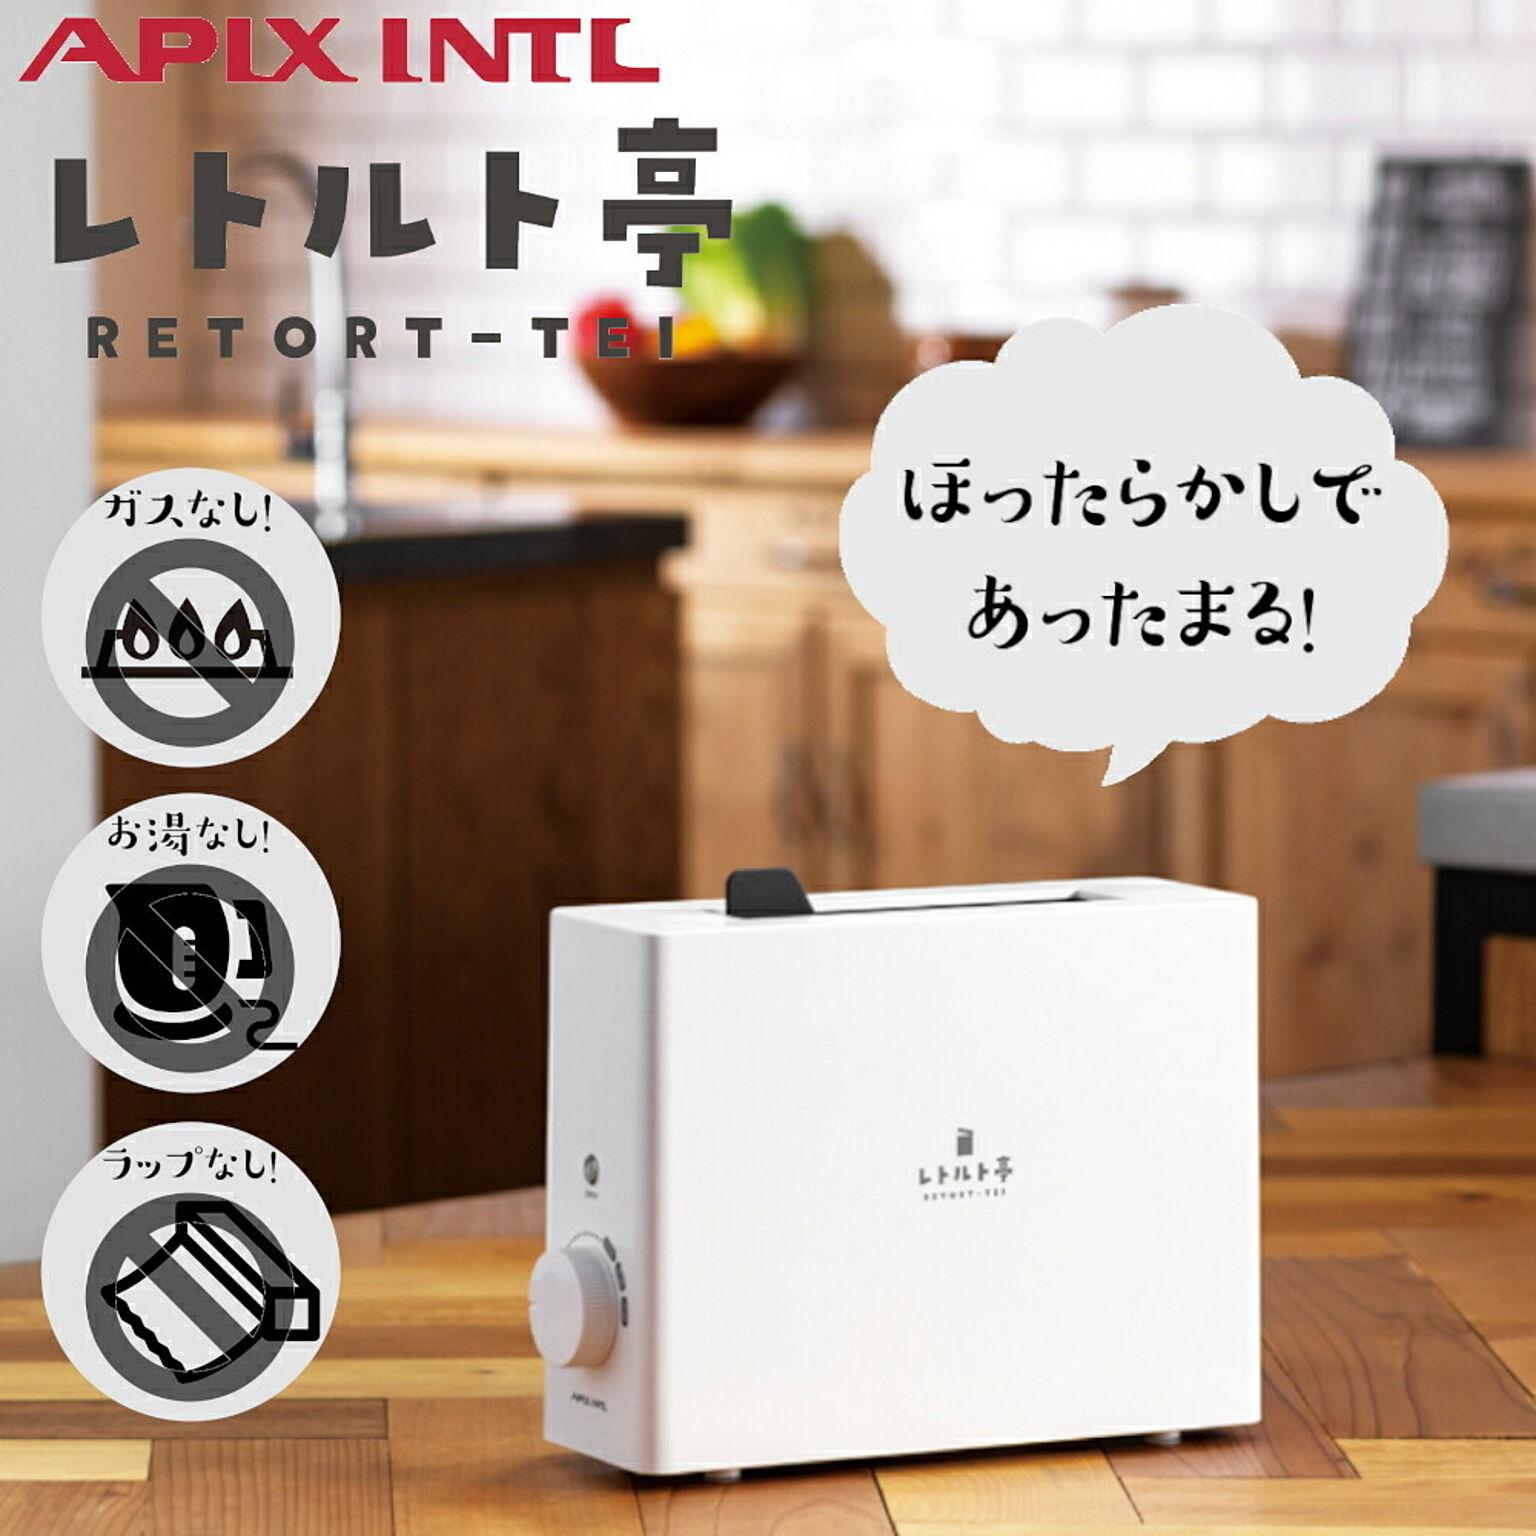 レトルト亭 レトルト調理器 ARM-110 大和無線 APIX